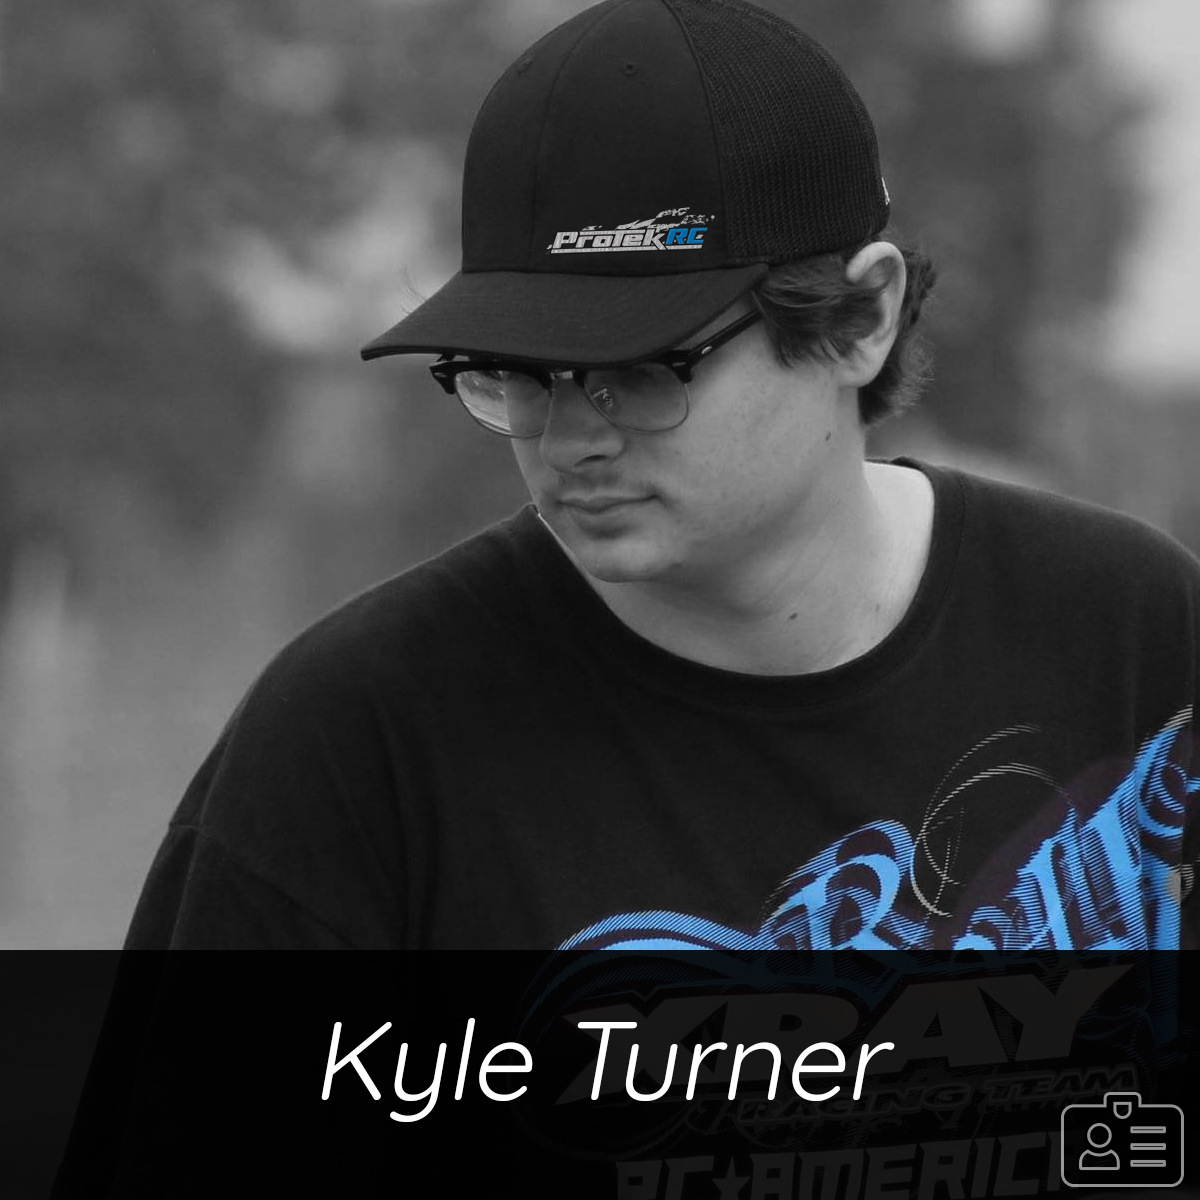 Kyle Turner - RC Racer - ProTek Pro Team